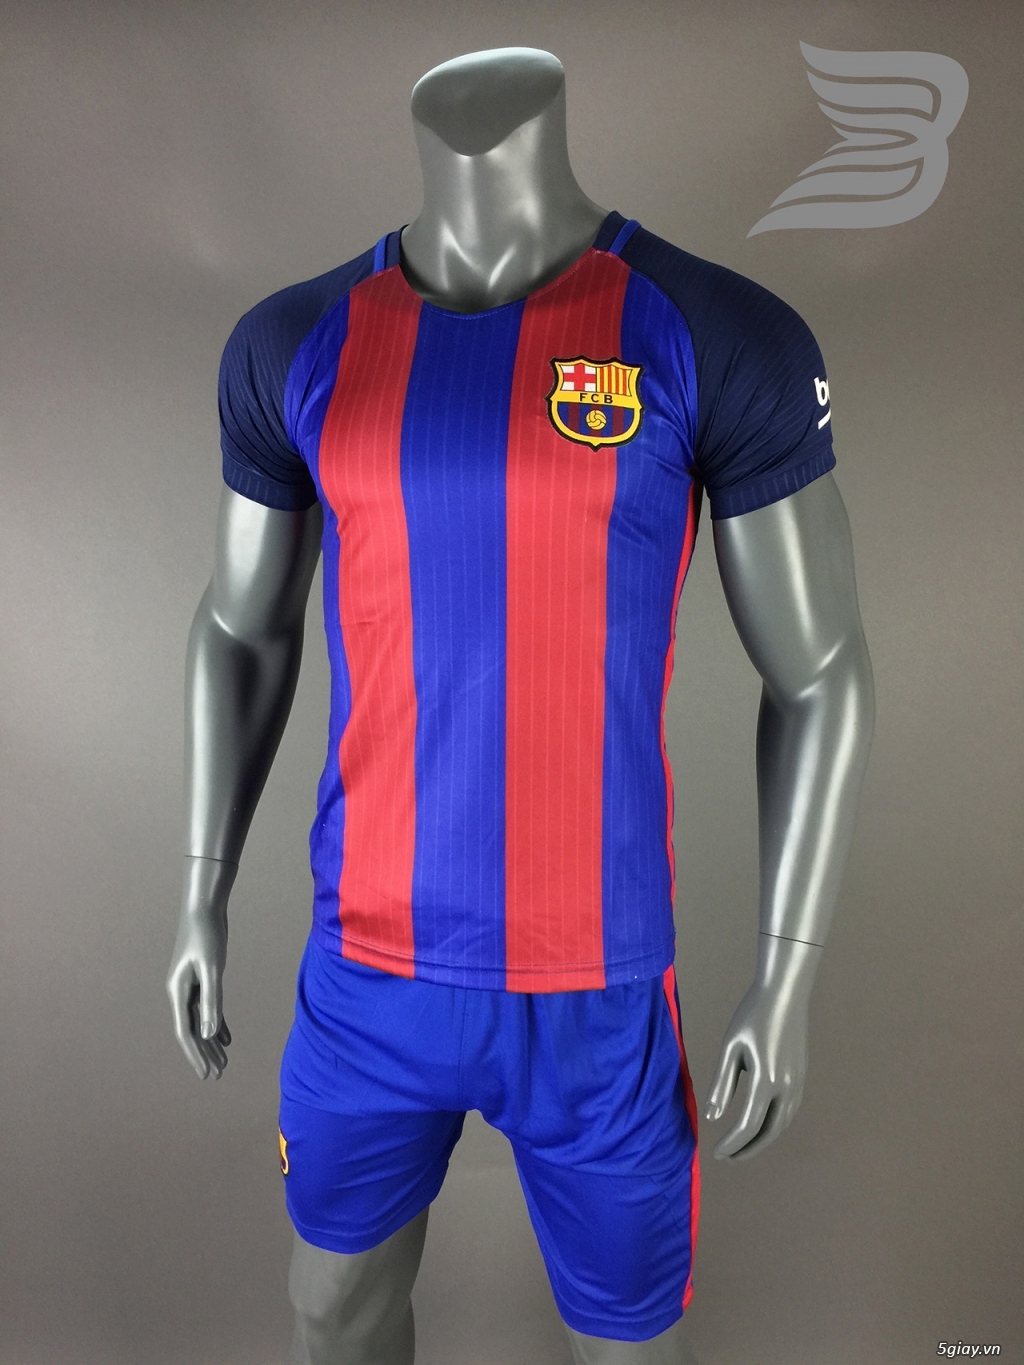 BẢO UYÊN SPORT - Chuyên cung cấp quần áo bóng đá với giá cạnh tranh kèm nhiều ưu đãi - 14